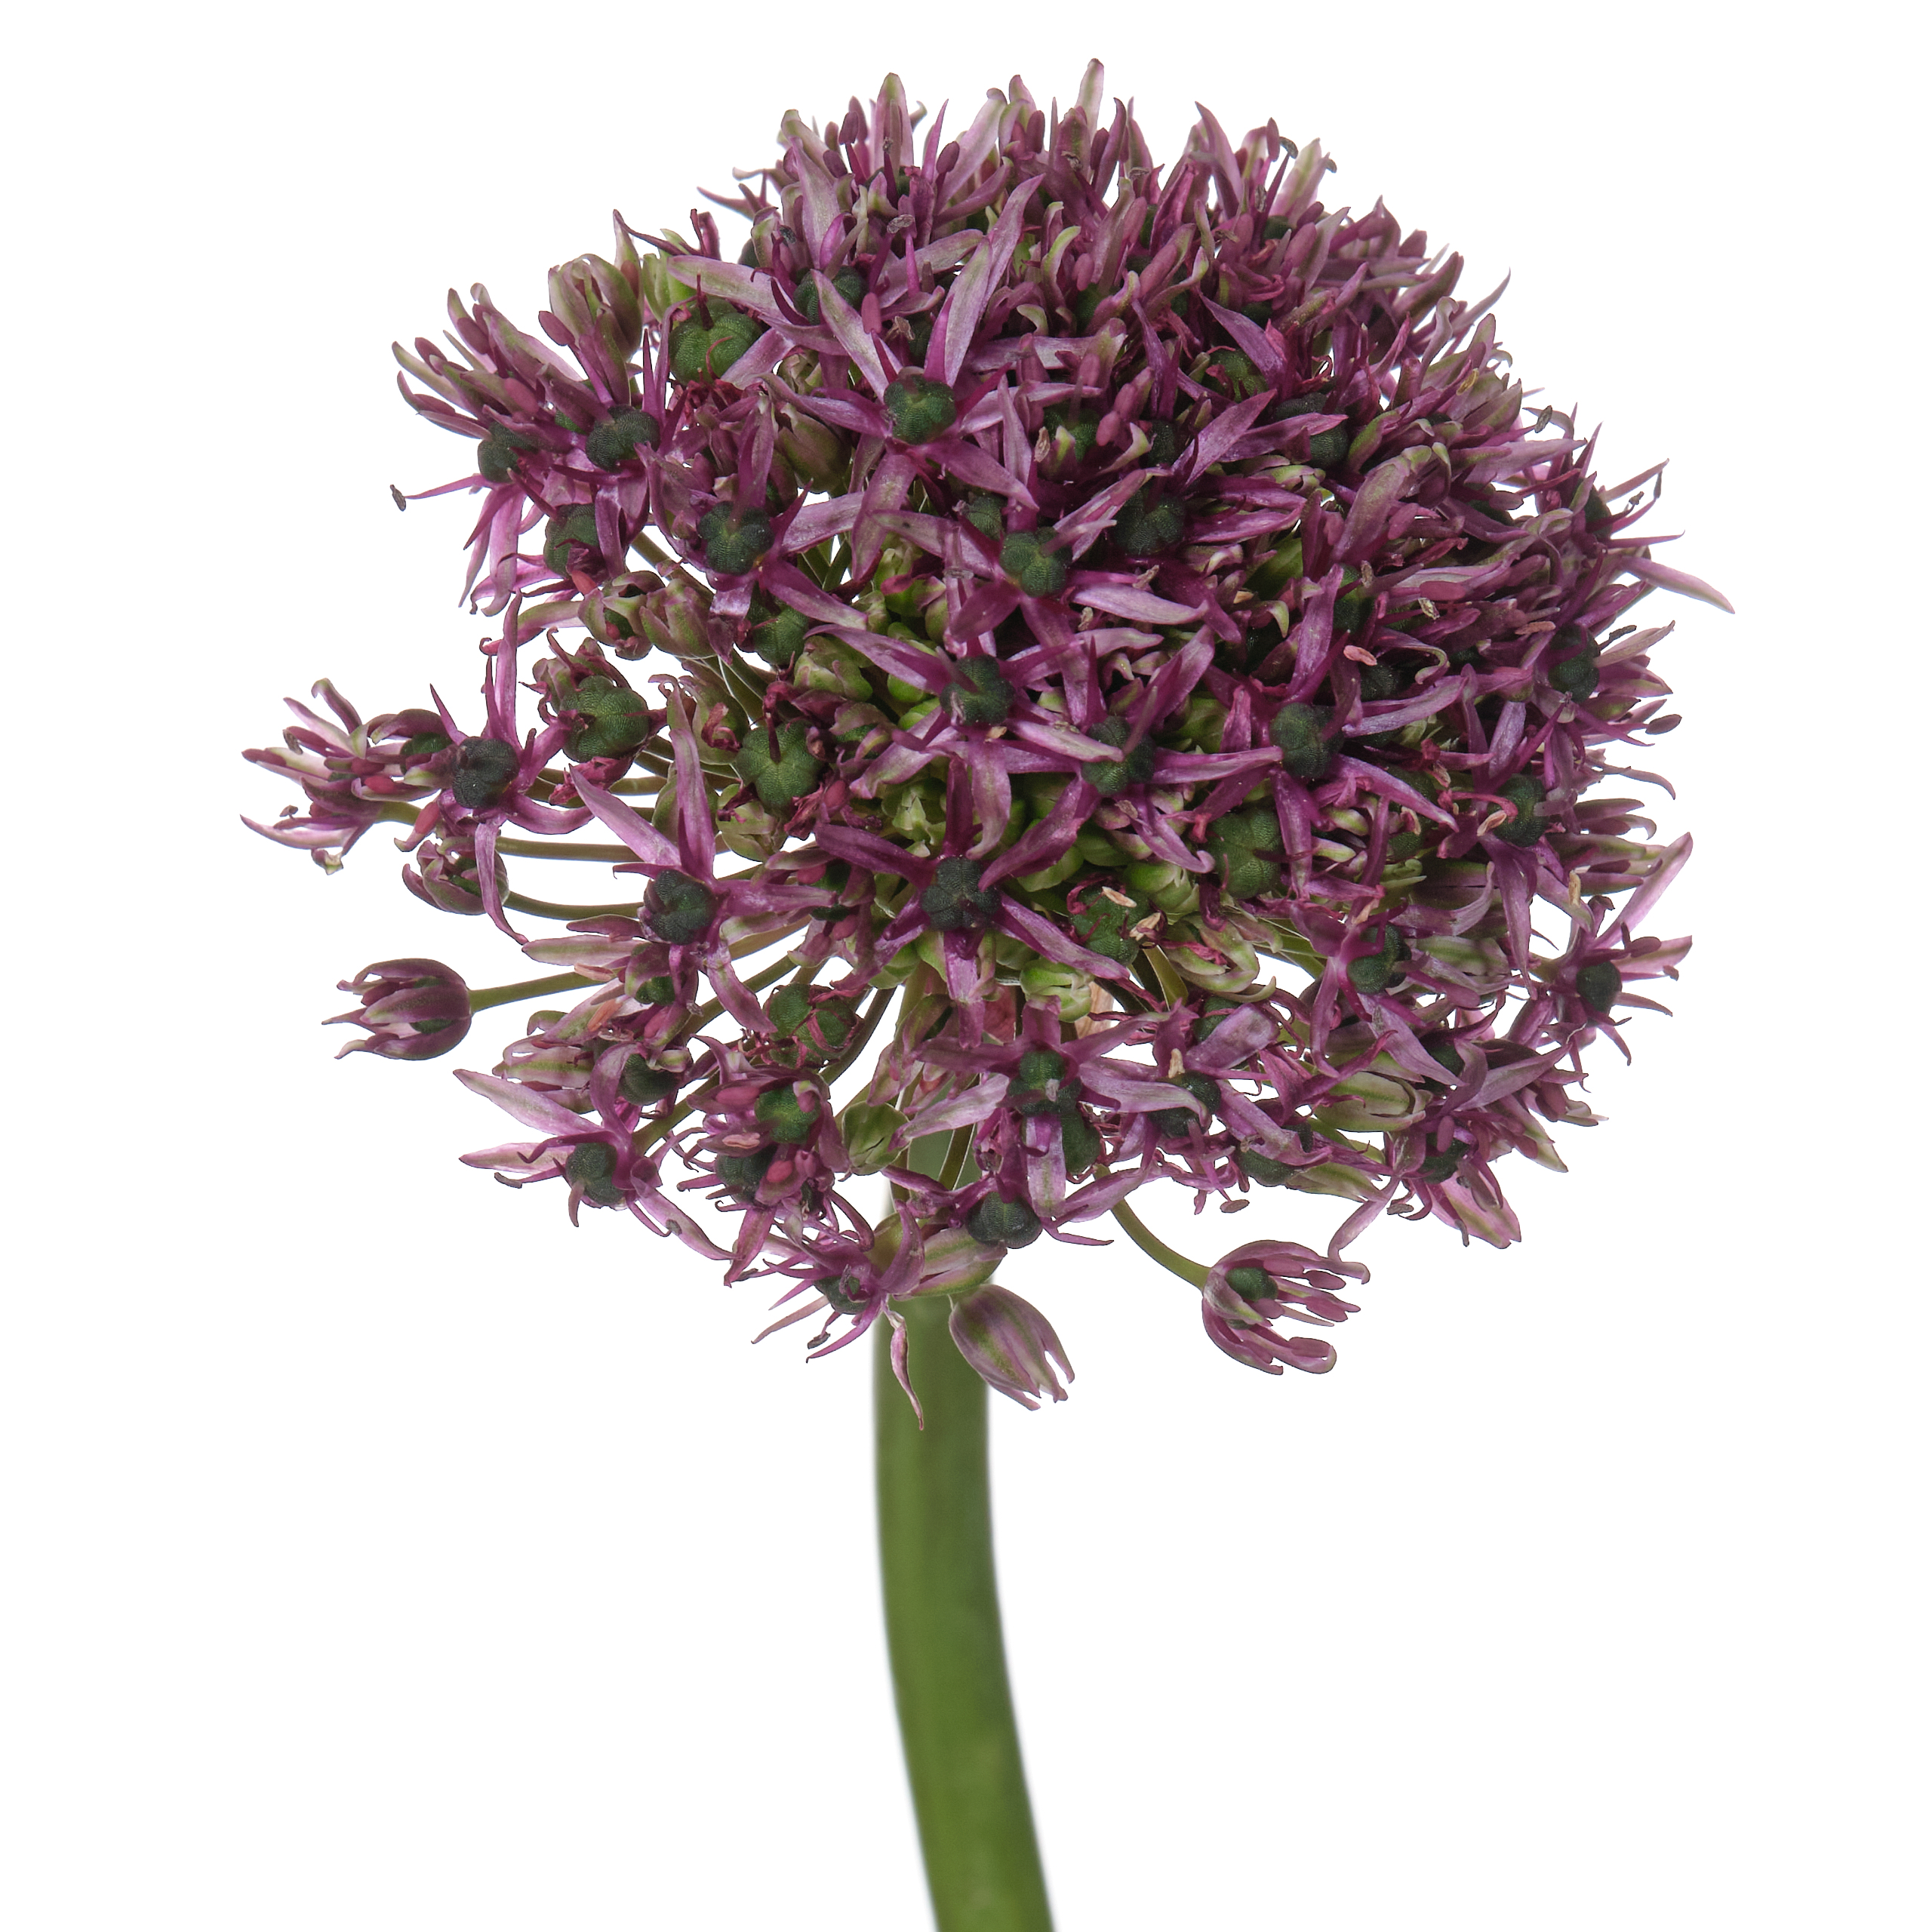 Allium miami